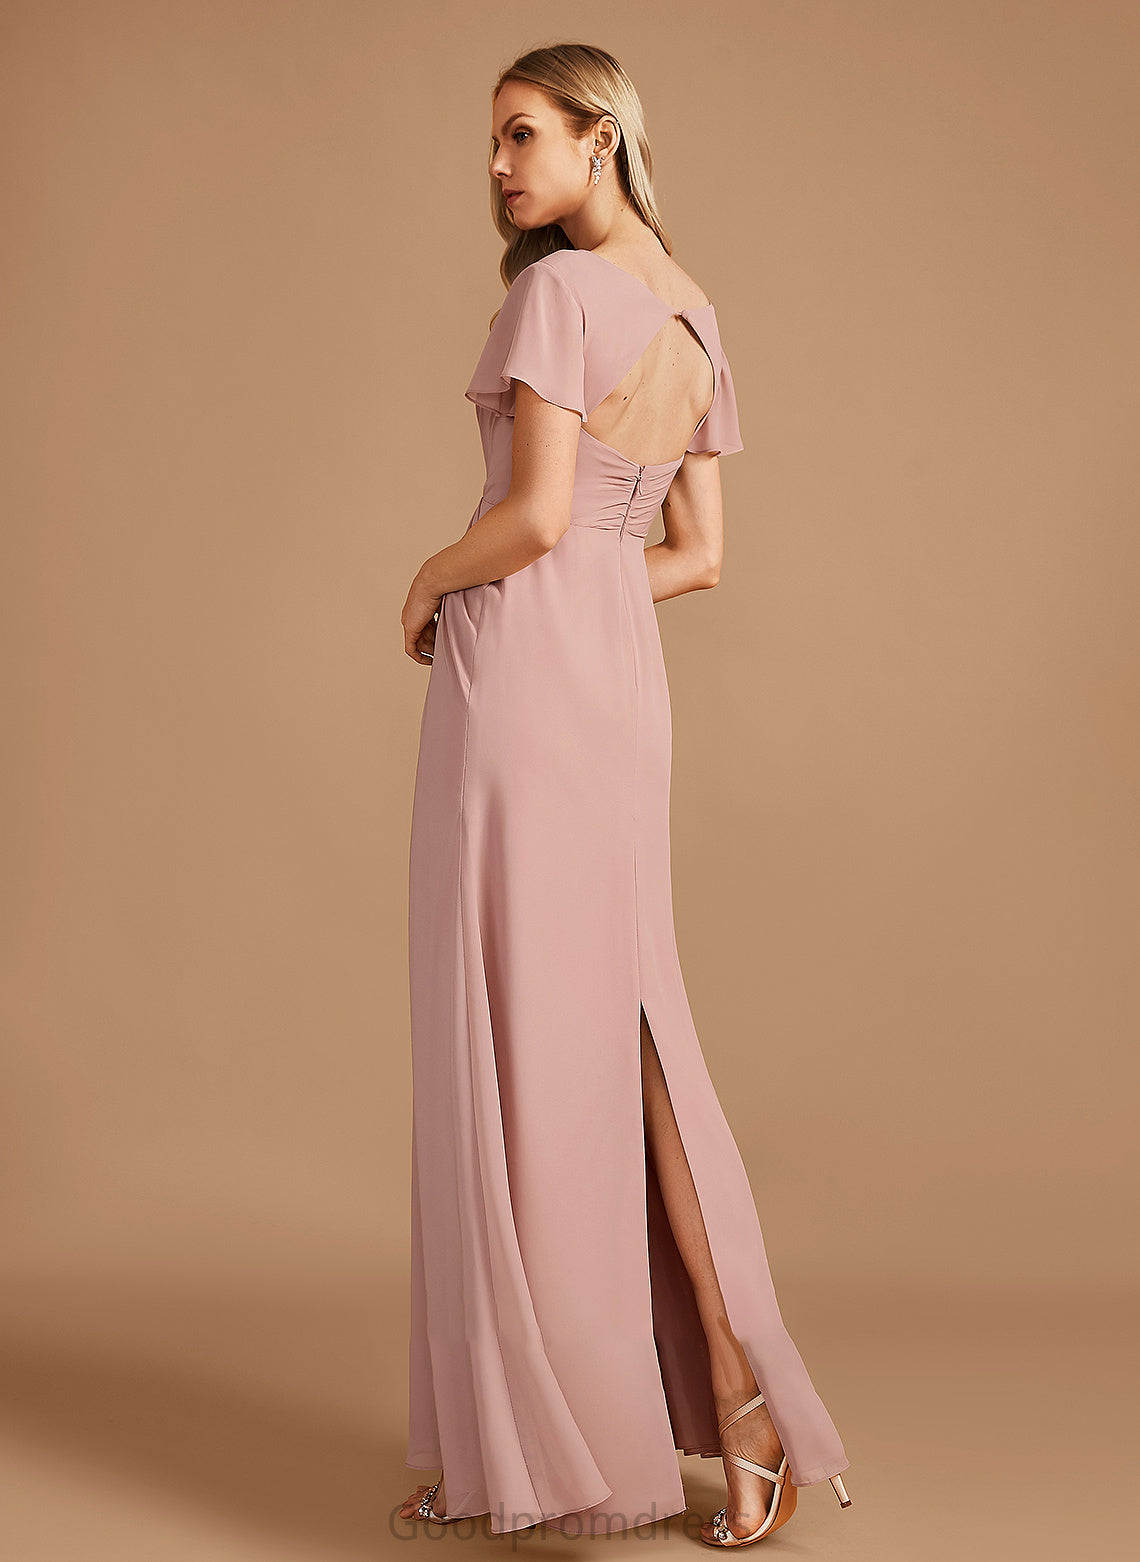 Silhouette A-Line Embellishment Length Neckline V-neck Ruffle Floor-Length Fabric Eleanor Sleeveless A-Line/Princess Bridesmaid Dresses